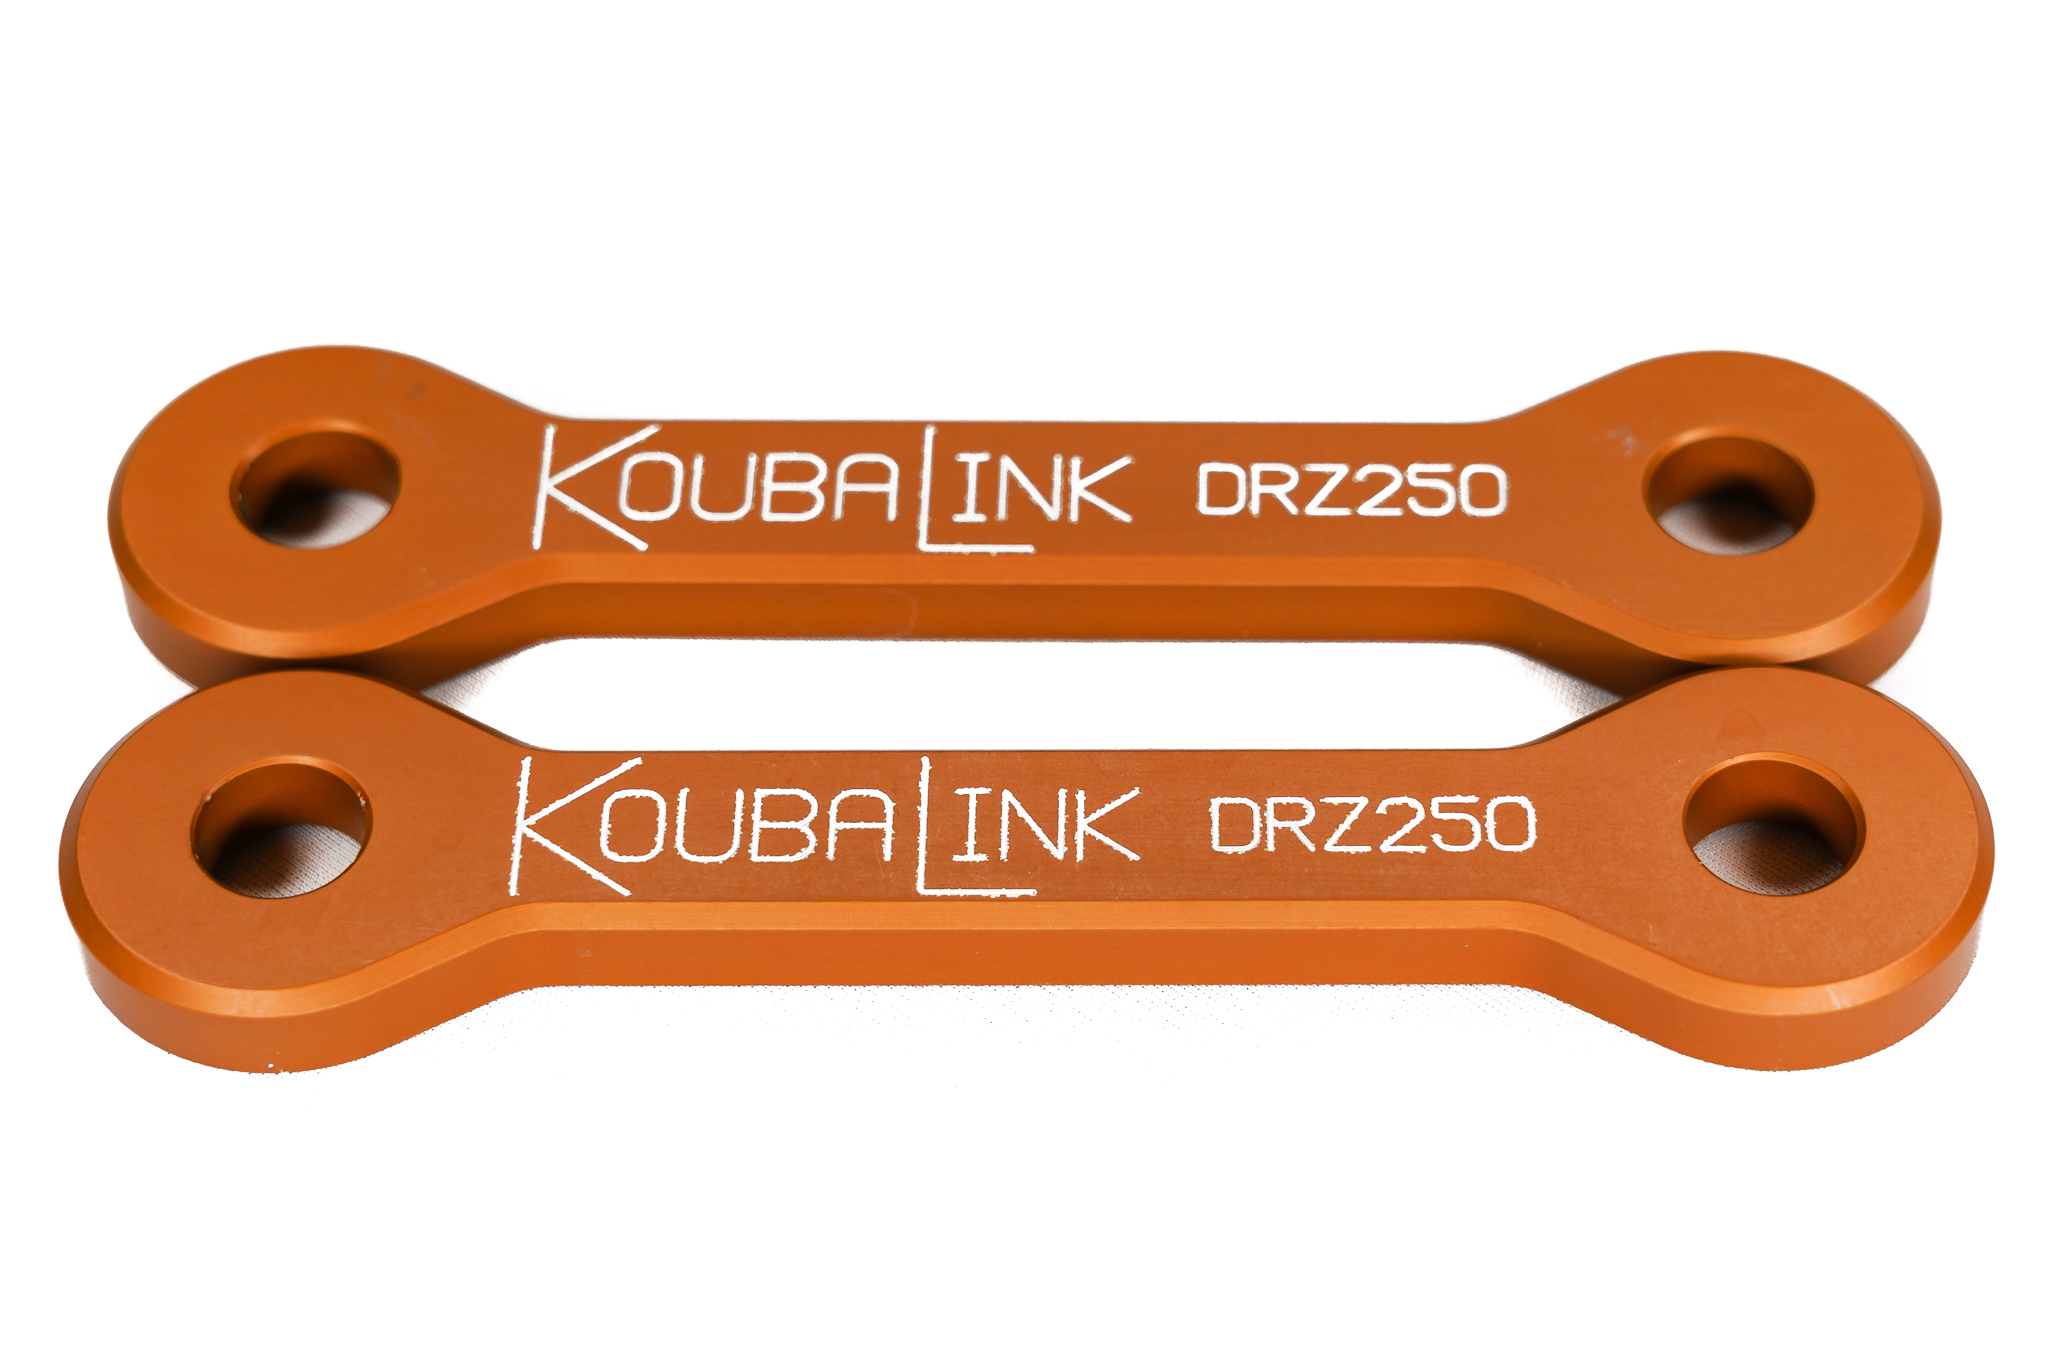 Suzuki Motorcycle Lowering Links/Lowering Kits — KoubaLink